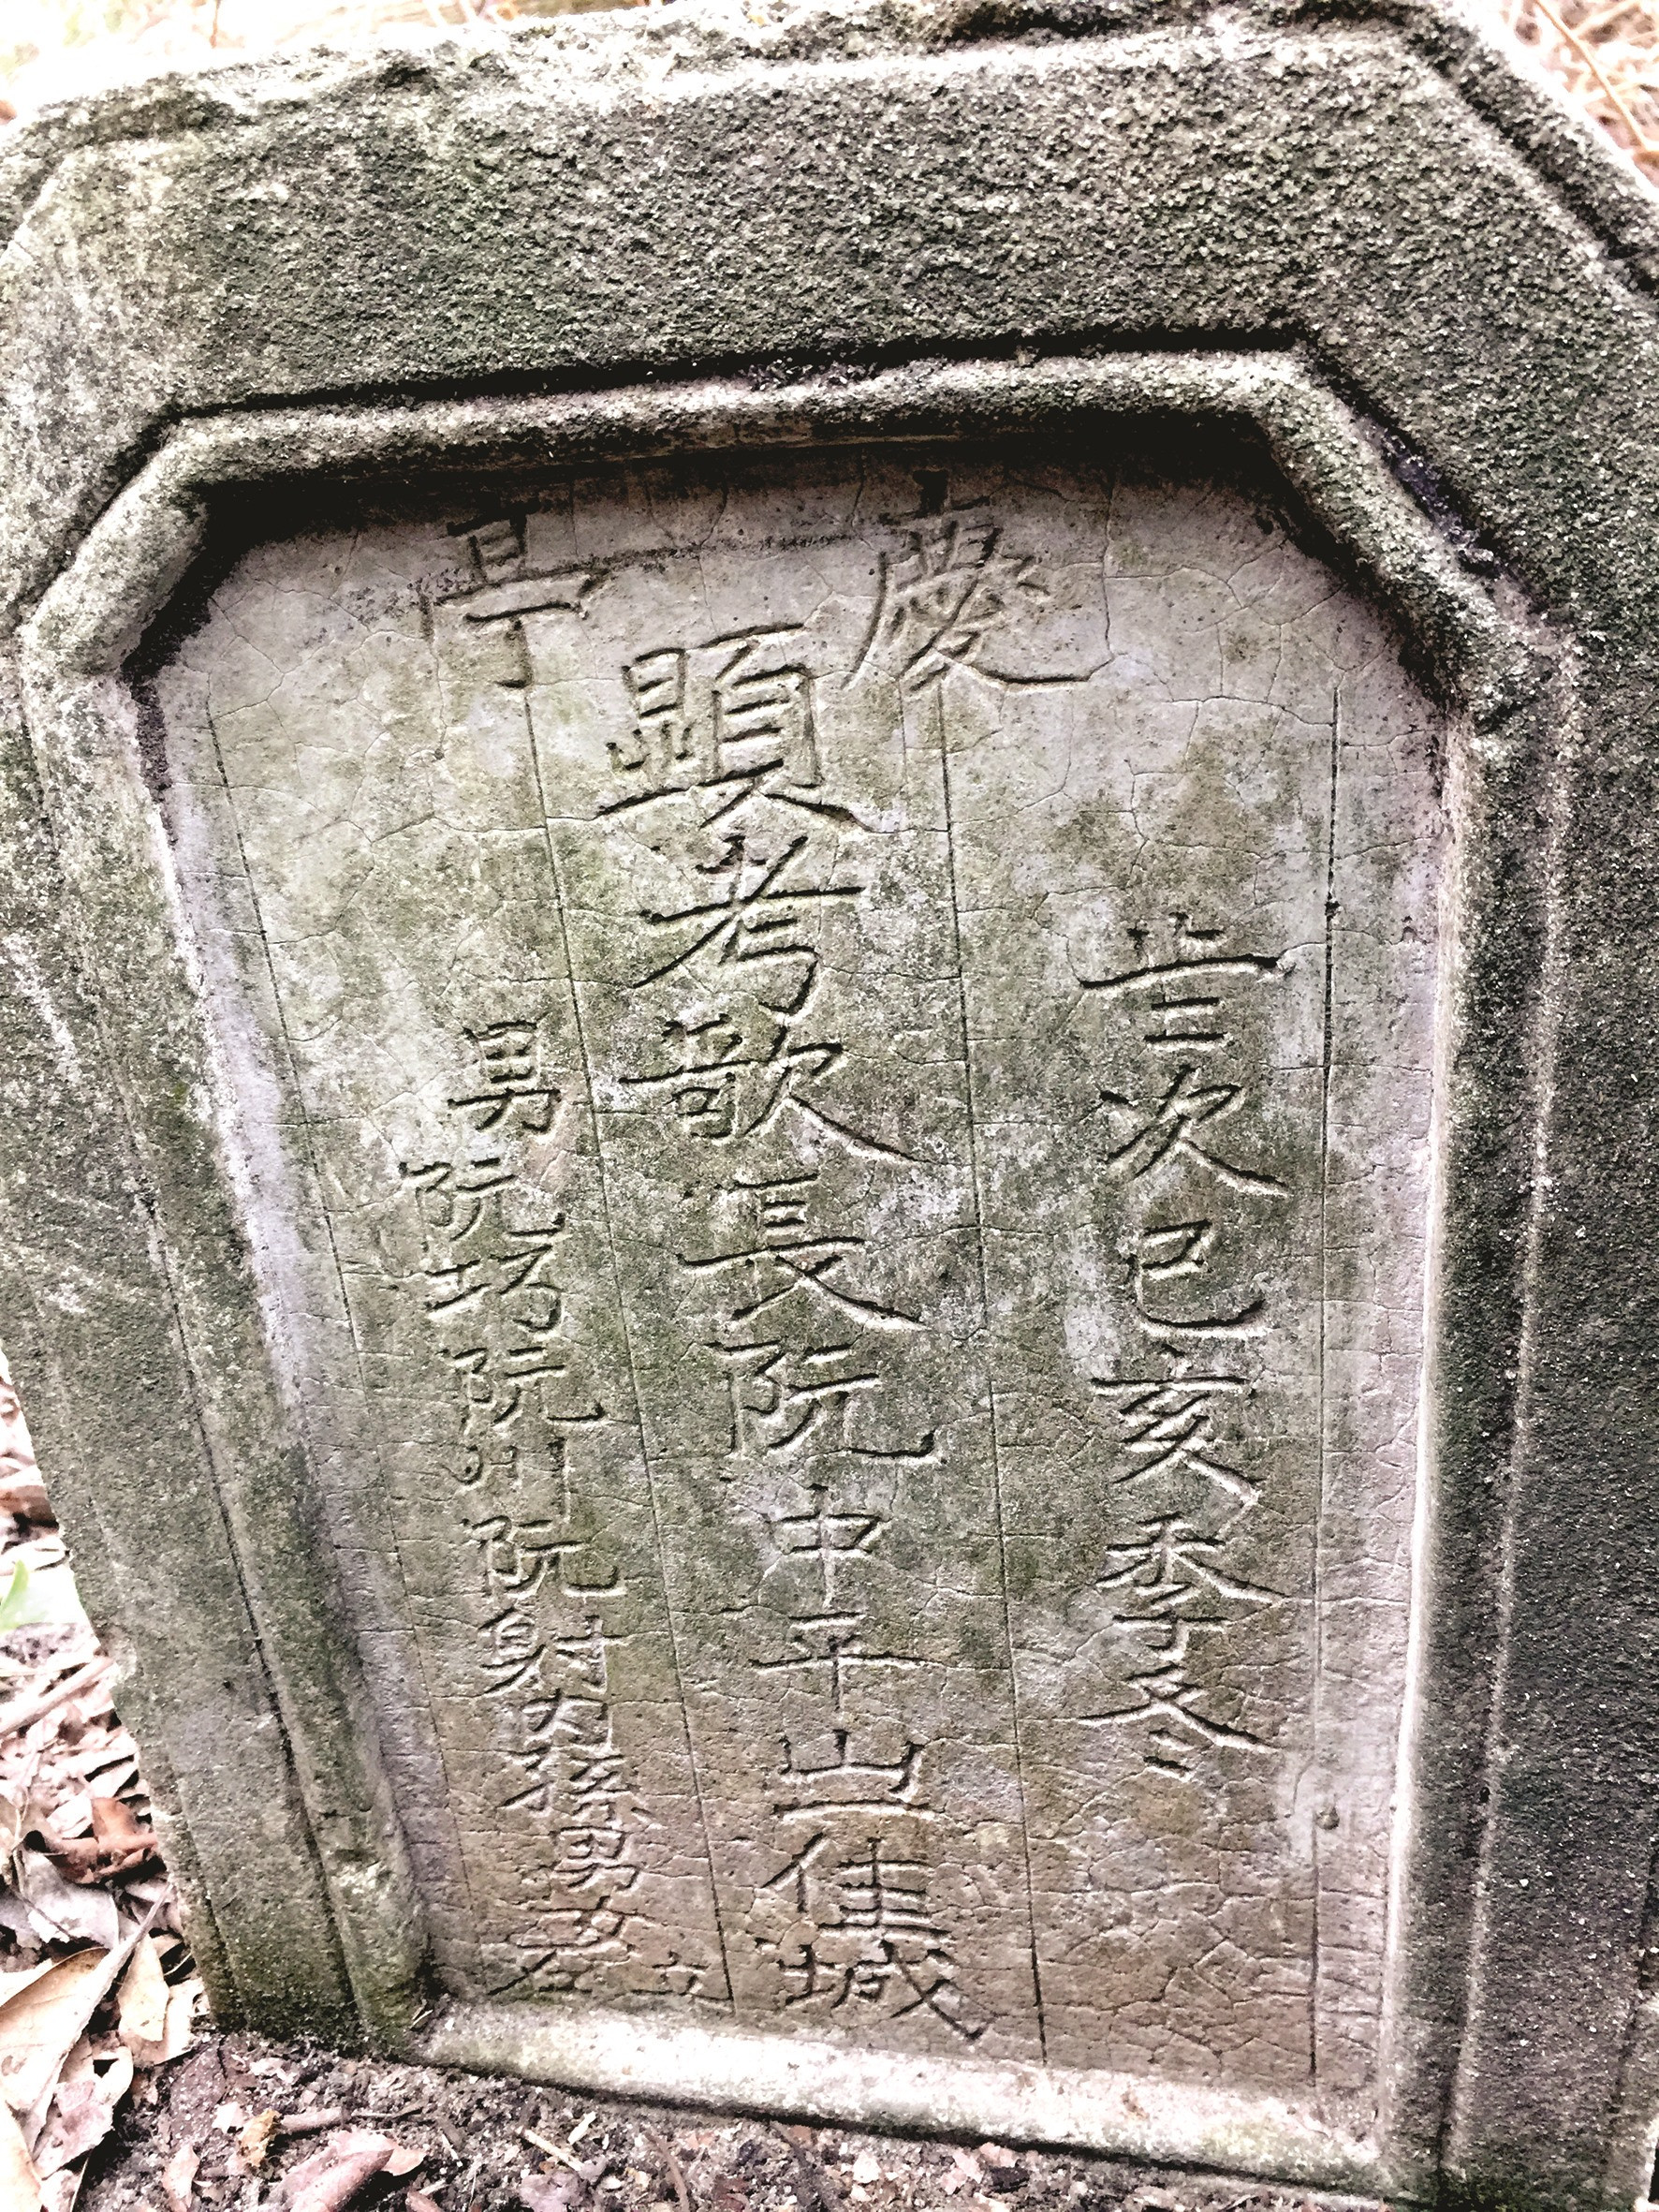 Tấm bia ghi chữ “ca trưởng” trên đầu mộ ông Nguyễn Trung Bình.